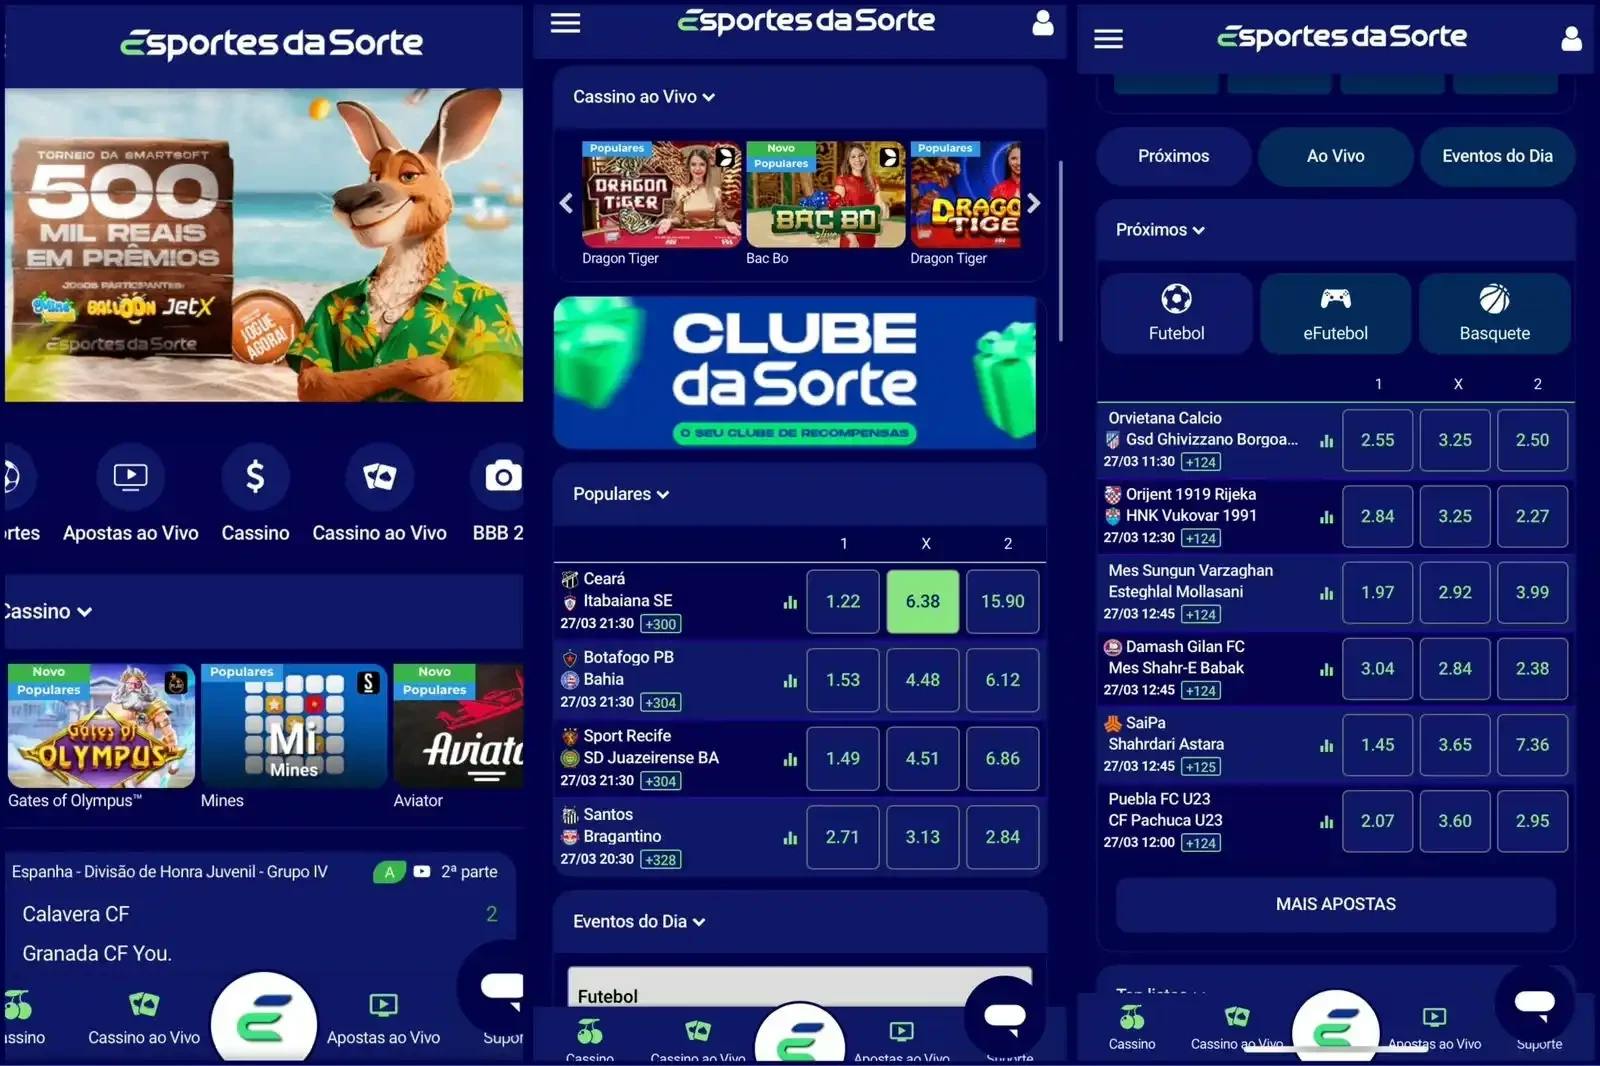 página inicial da esportes da sorte em três telas no celular